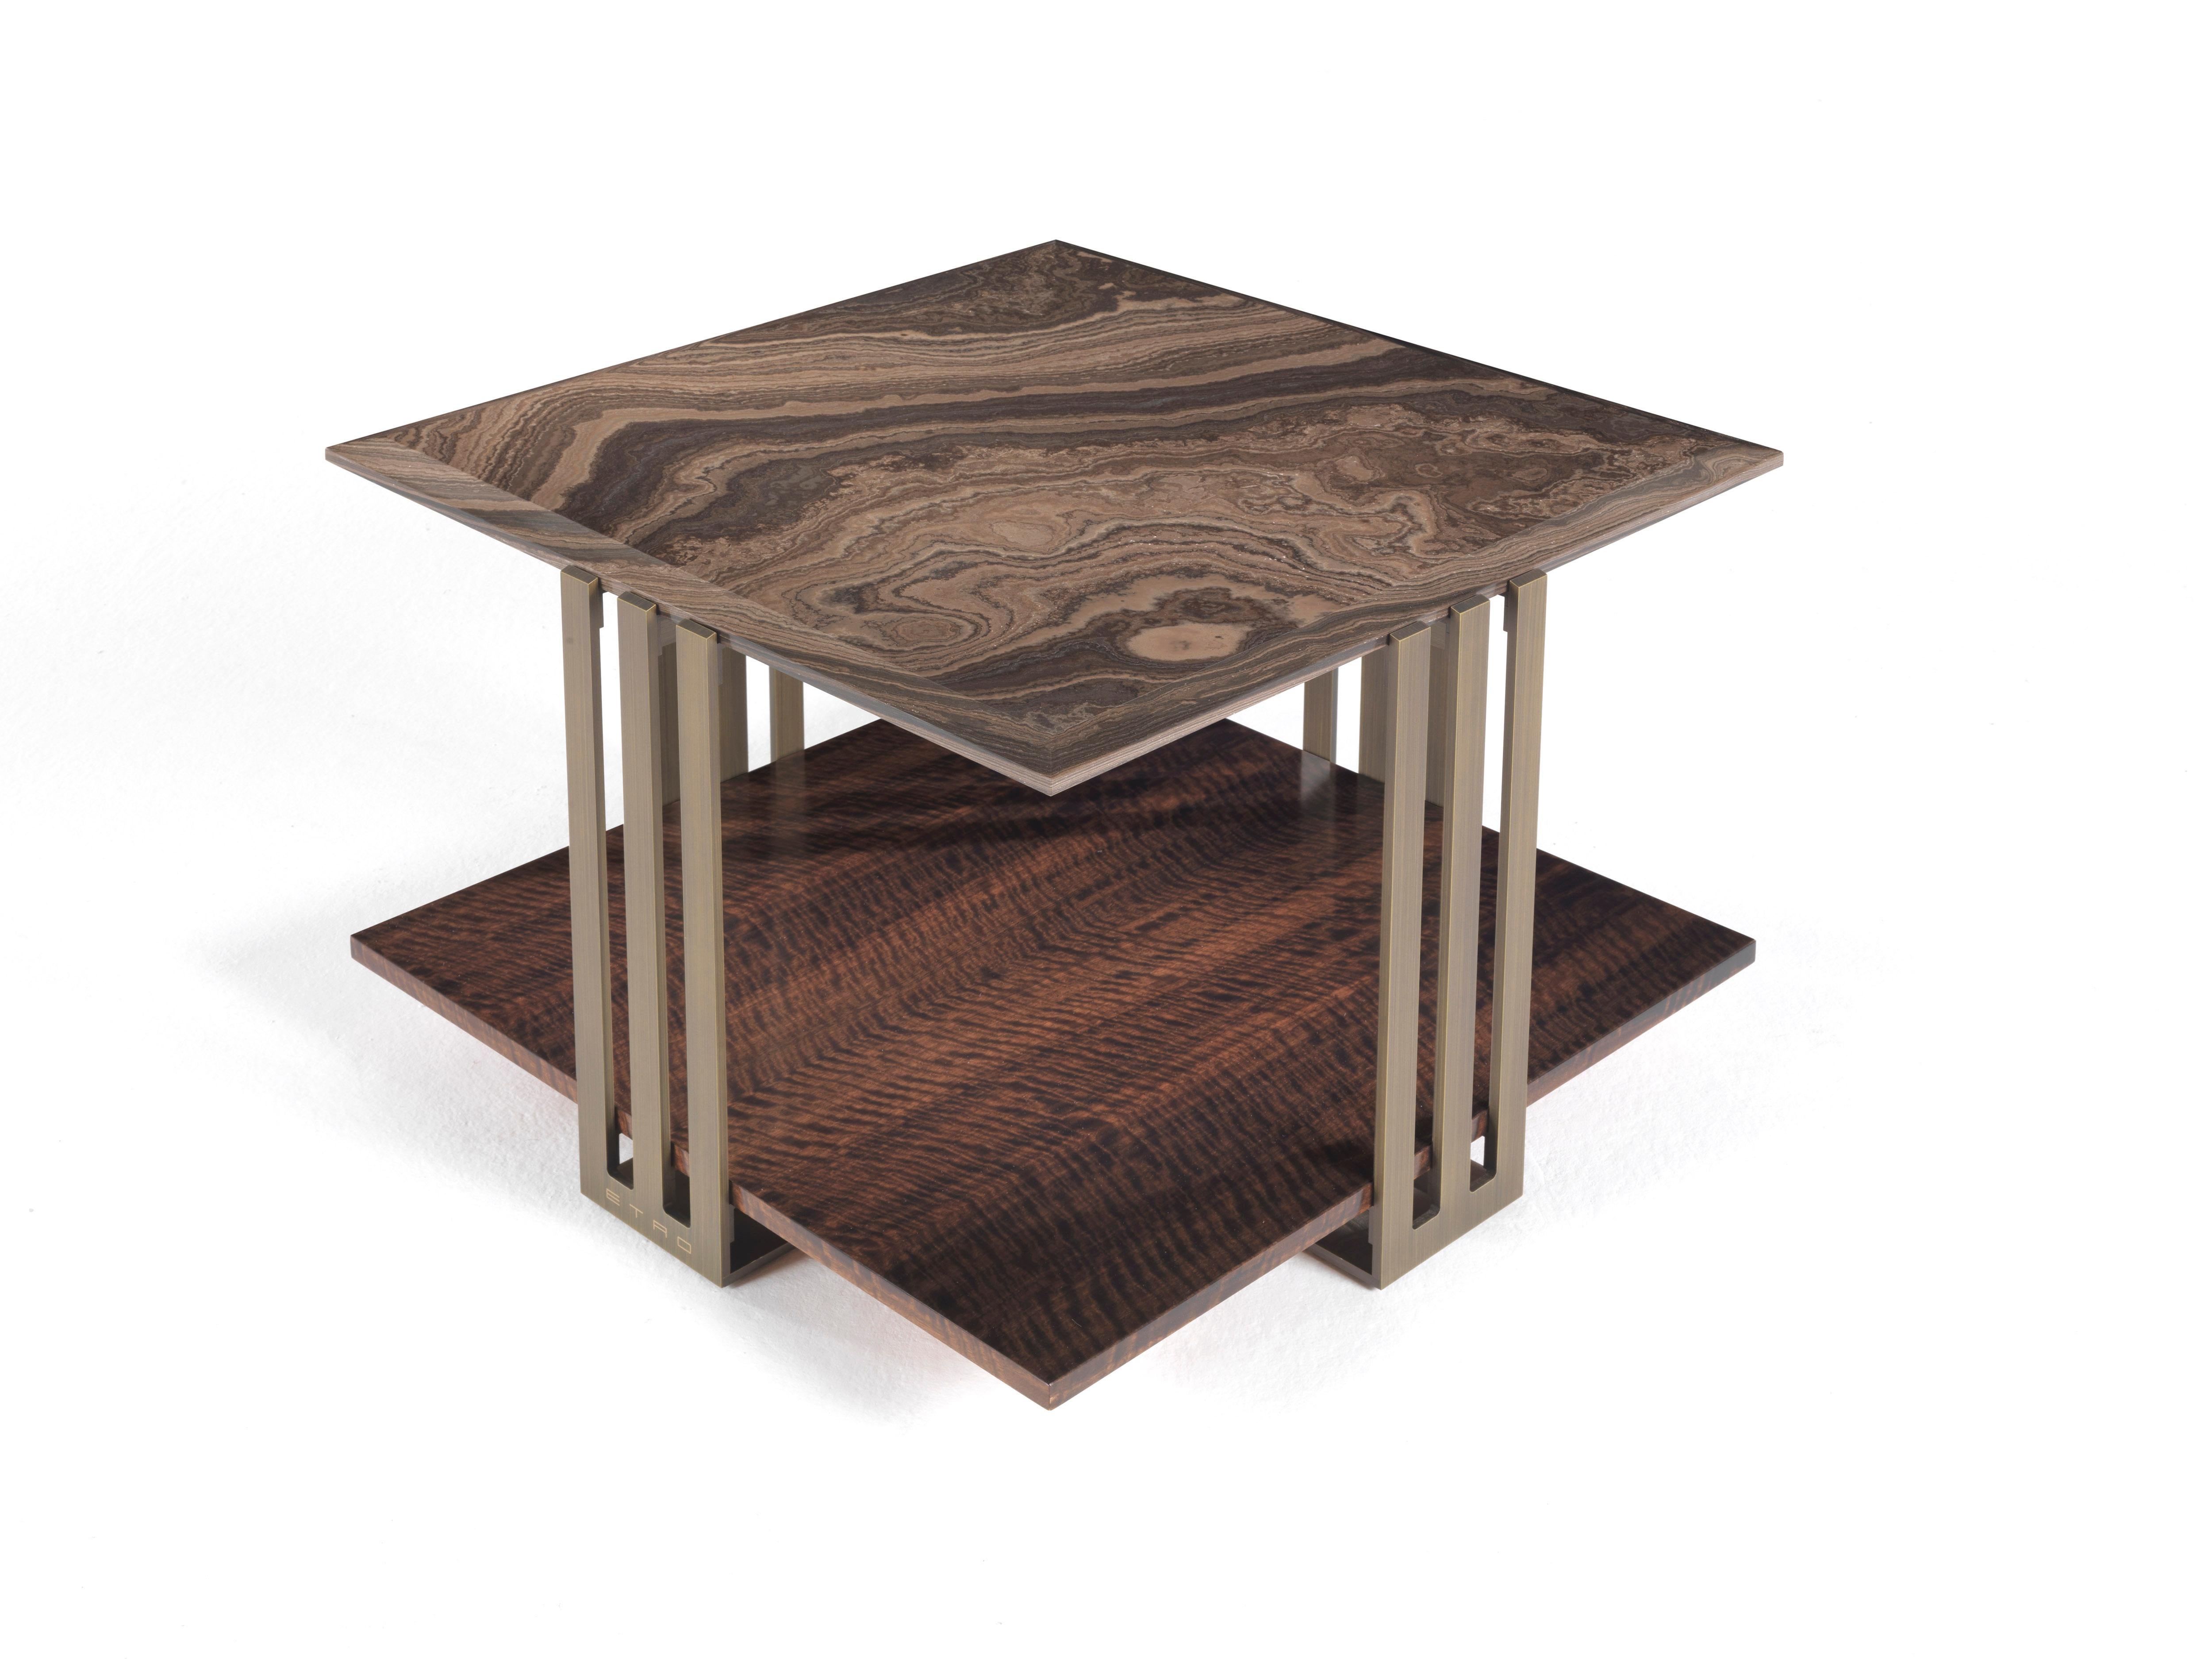 Une petite table compacte à deux plateaux présentant une combinaison originale de matériaux. La structure en métal bronze patiné rencontre l'élégance précieuse des plateaux en marbre ou en bois de la collection Etro Home Interiors, créant un élément